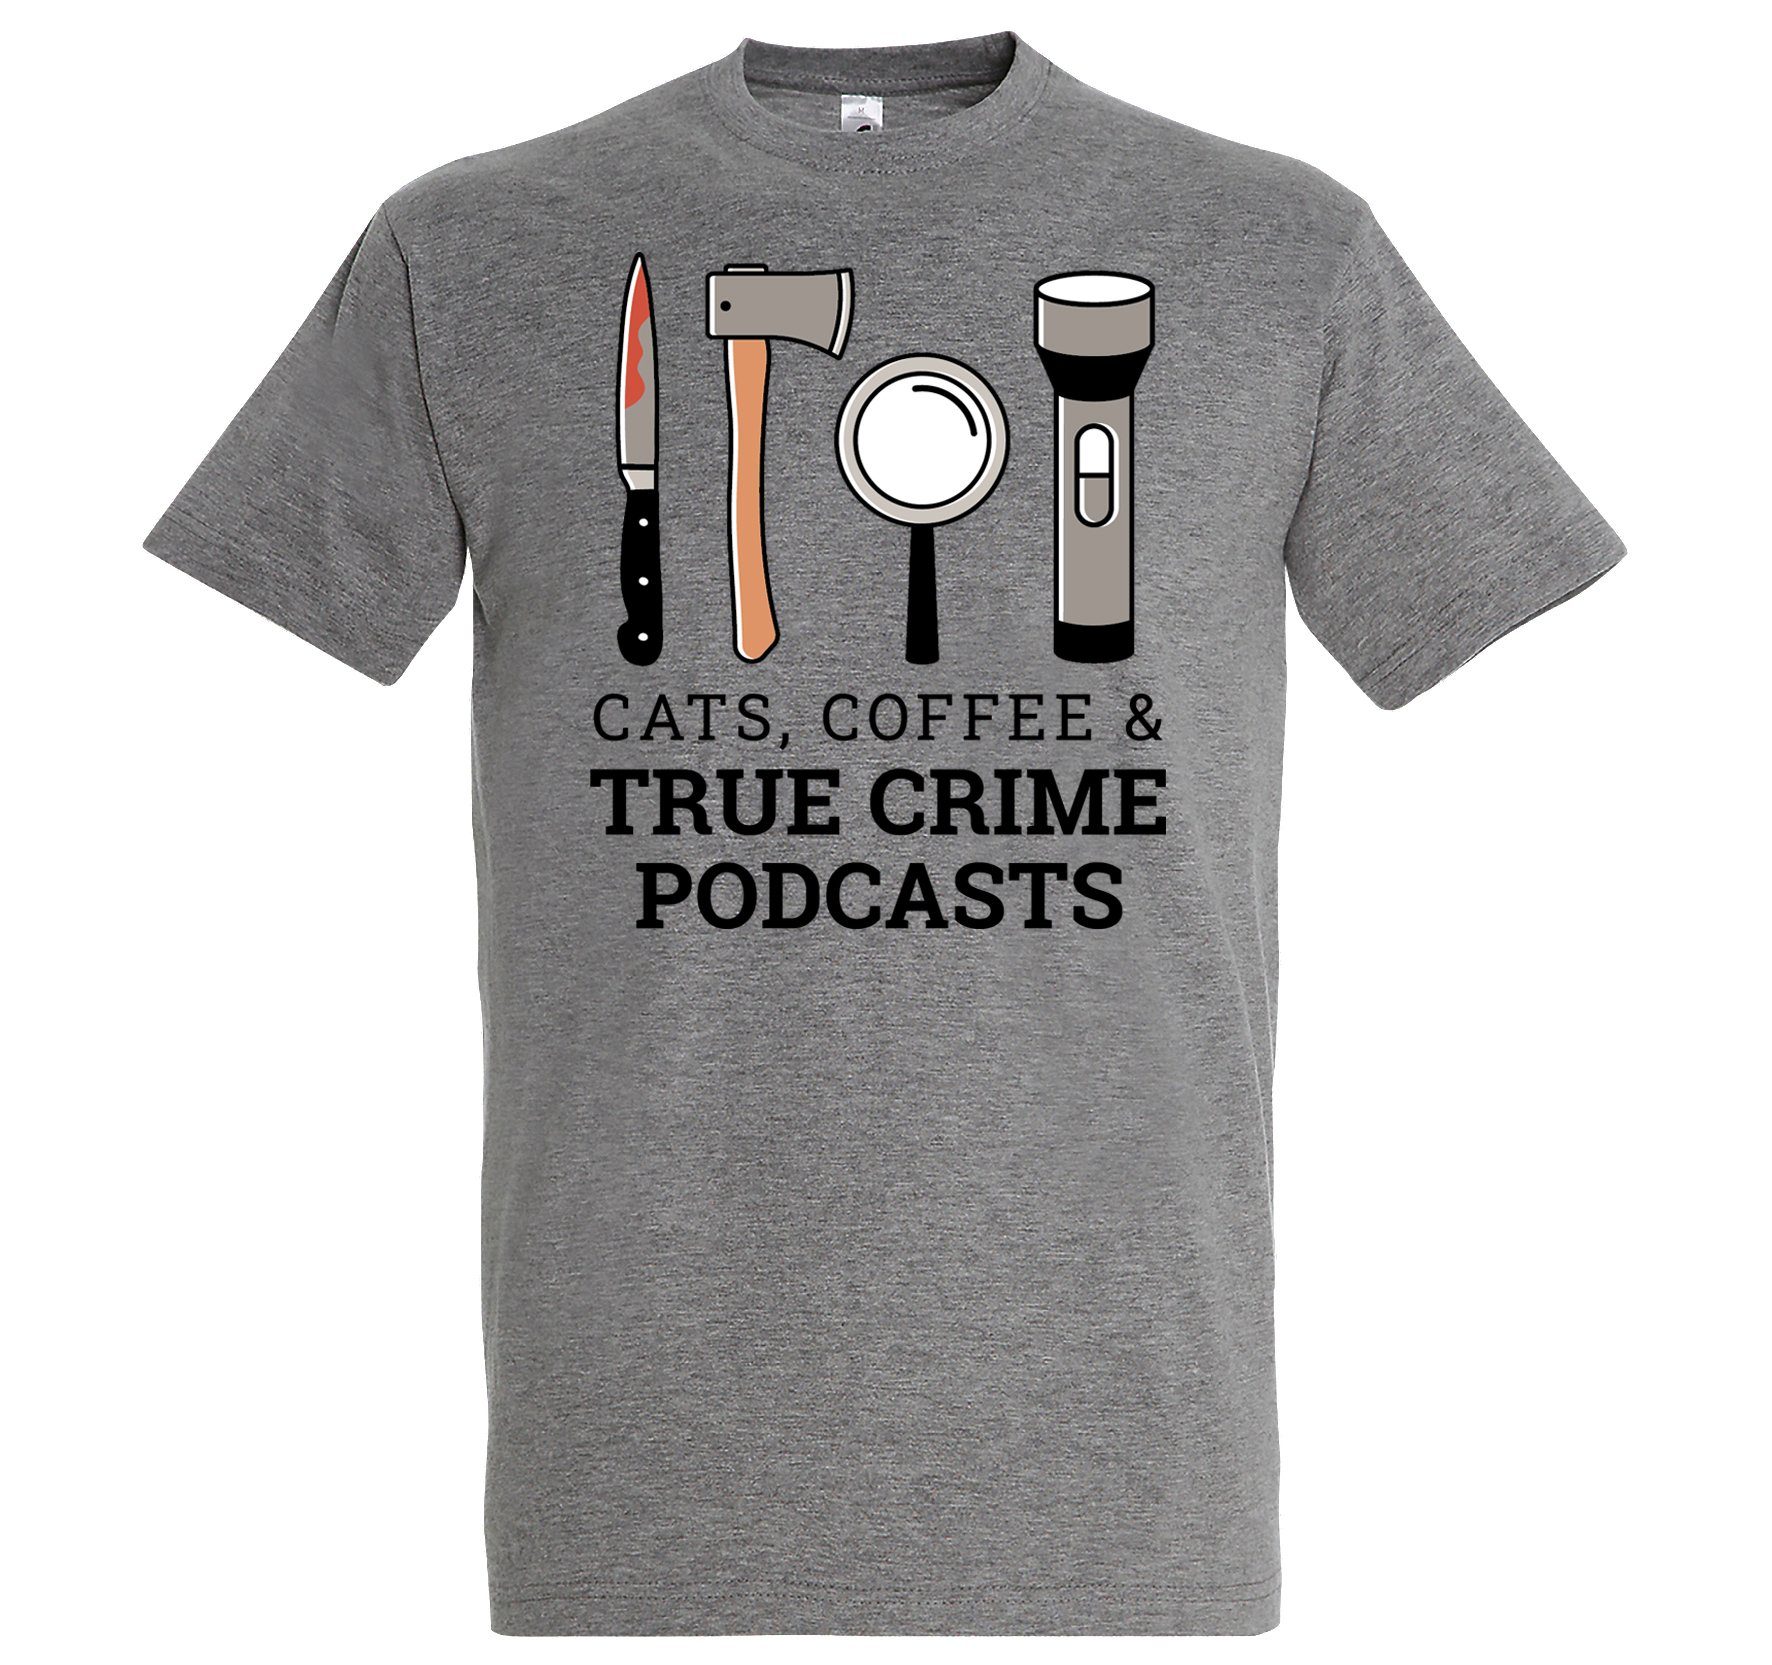 Youth Designz T-Shirt CATS COFFEE & TRUE CRIME PODCASTS Herren Shirt Mit Lustigem Aufdruck Grau